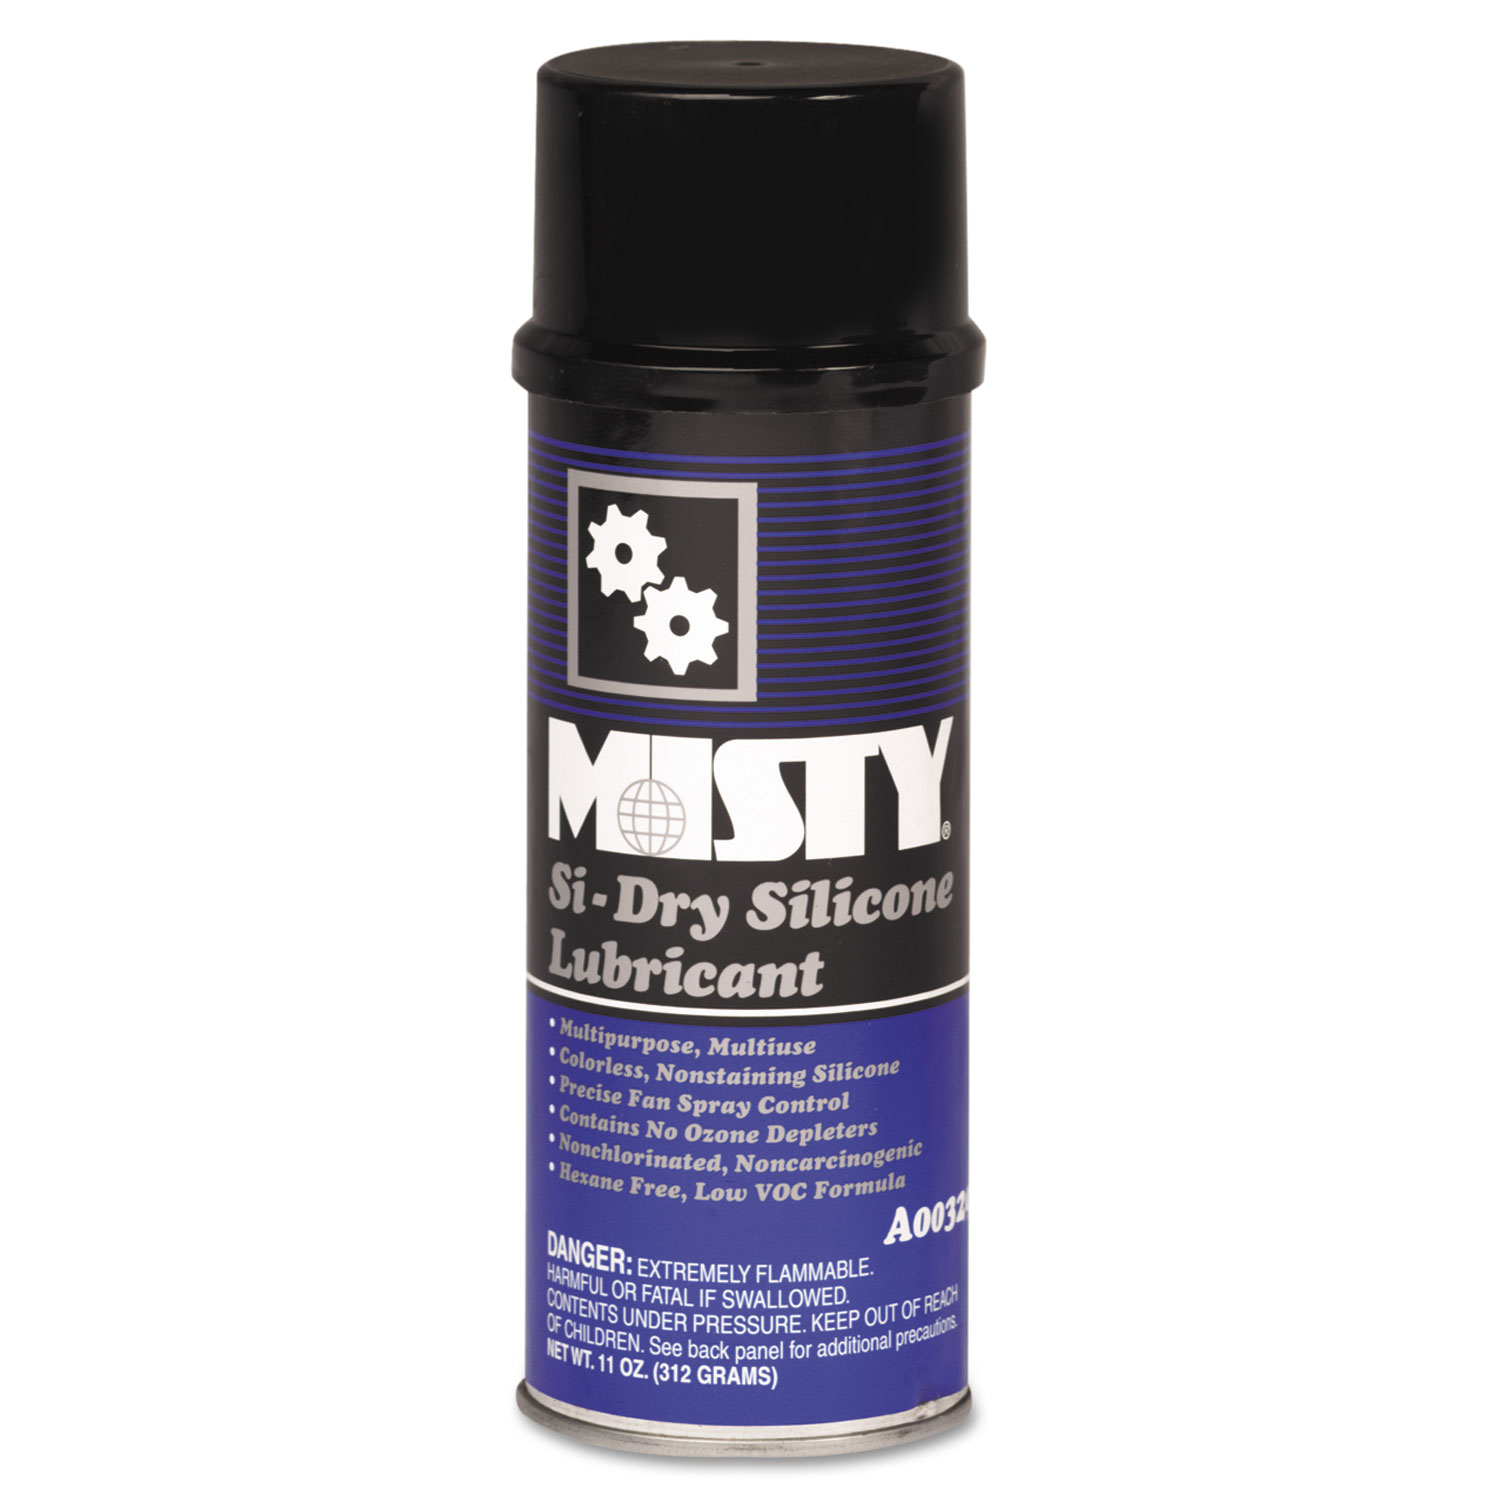  Misty 1033585 Si-Dry Silicone Spray Lubricant, Aerosol, 11oz, 12/Carton (AMR1033585) 